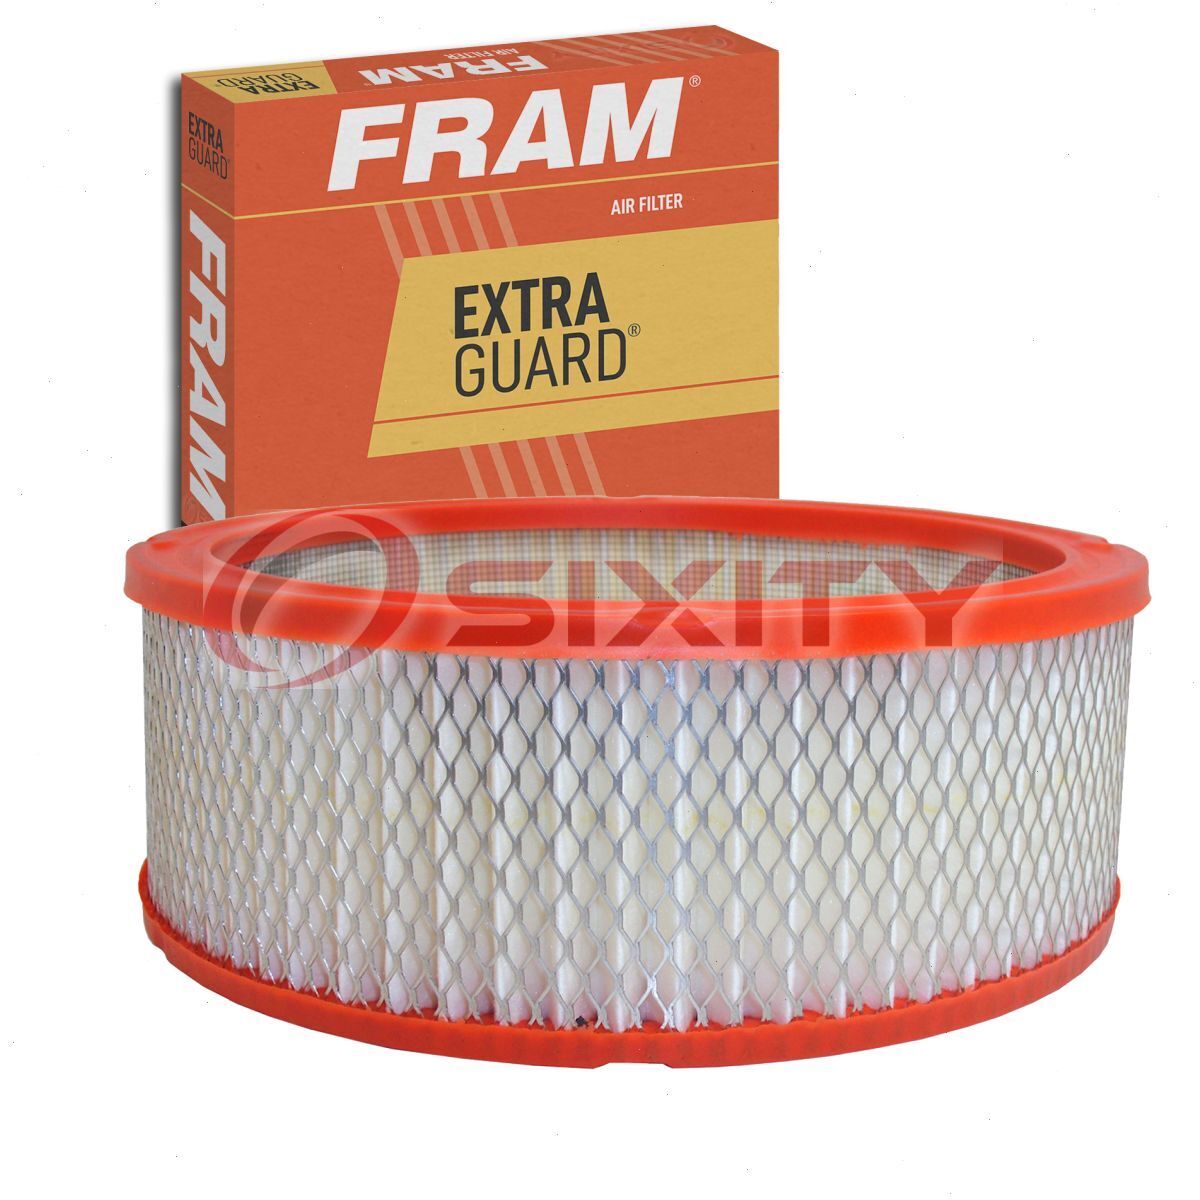 FRAM Extra Guard Air Filter for 1968-1970 Chevrolet Biscayne Intake Inlet vv